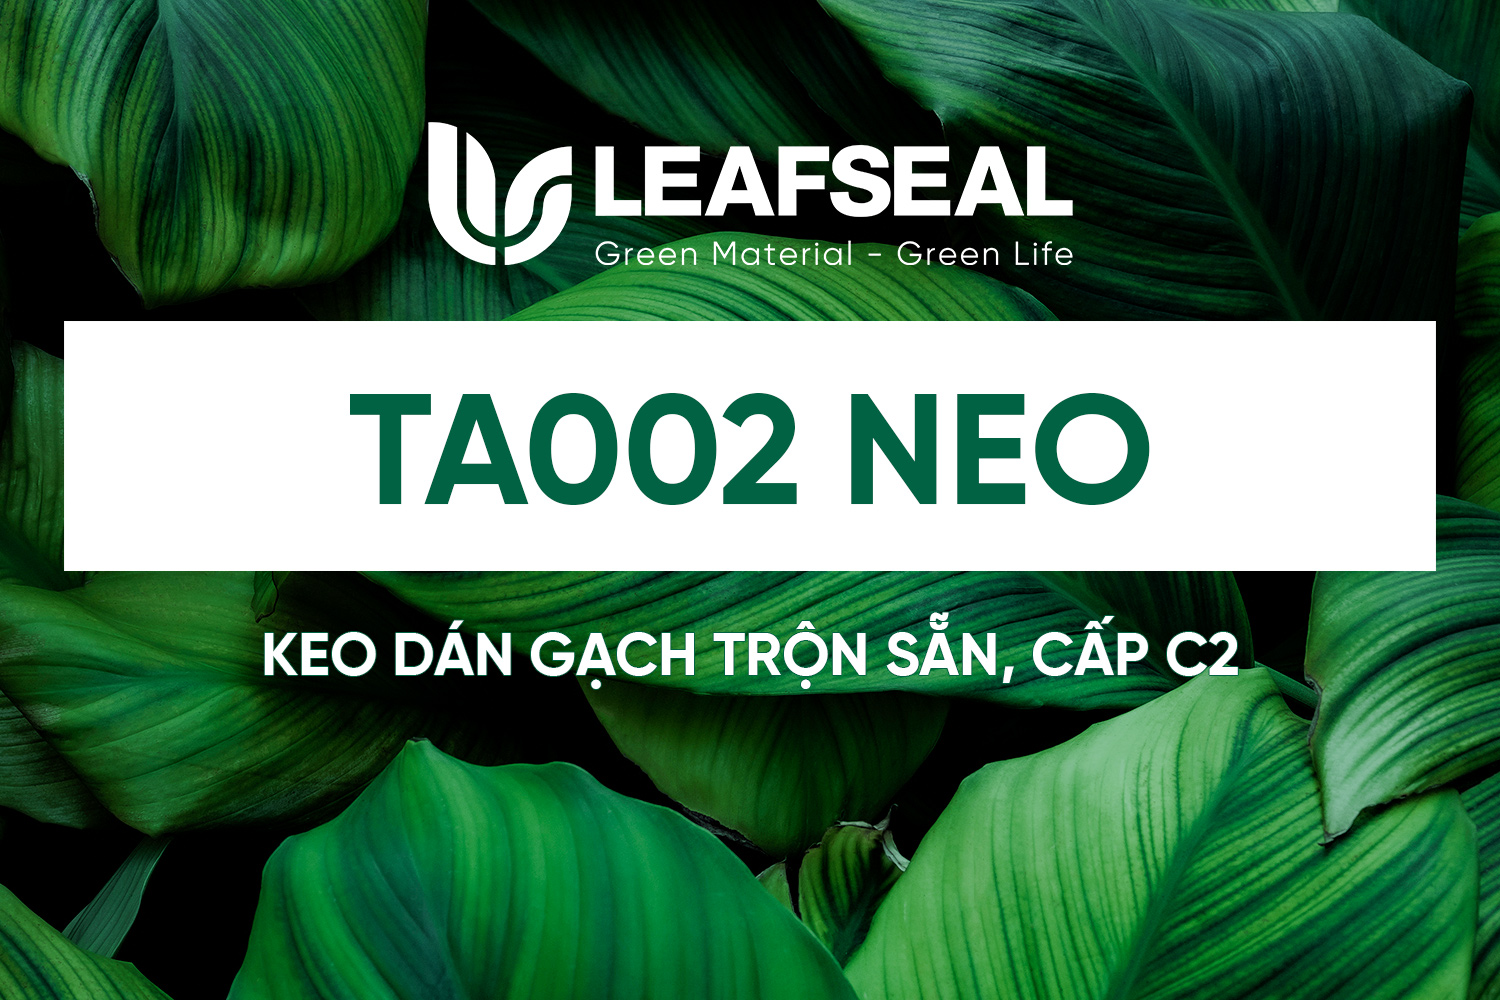 LeafSeal TA002 Neo